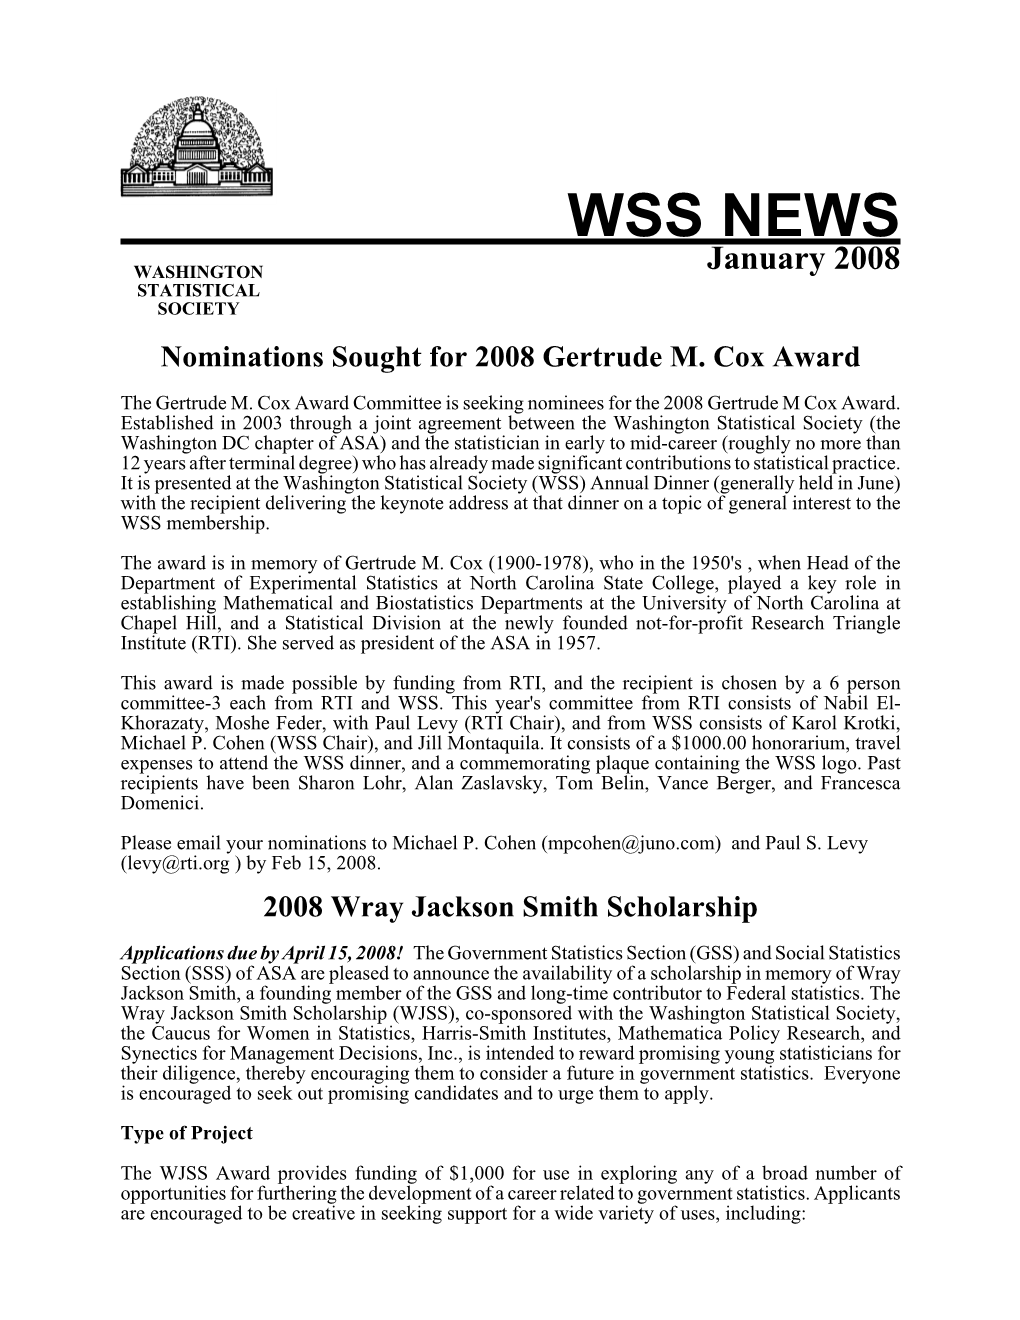 WSS NEWS: June 2004